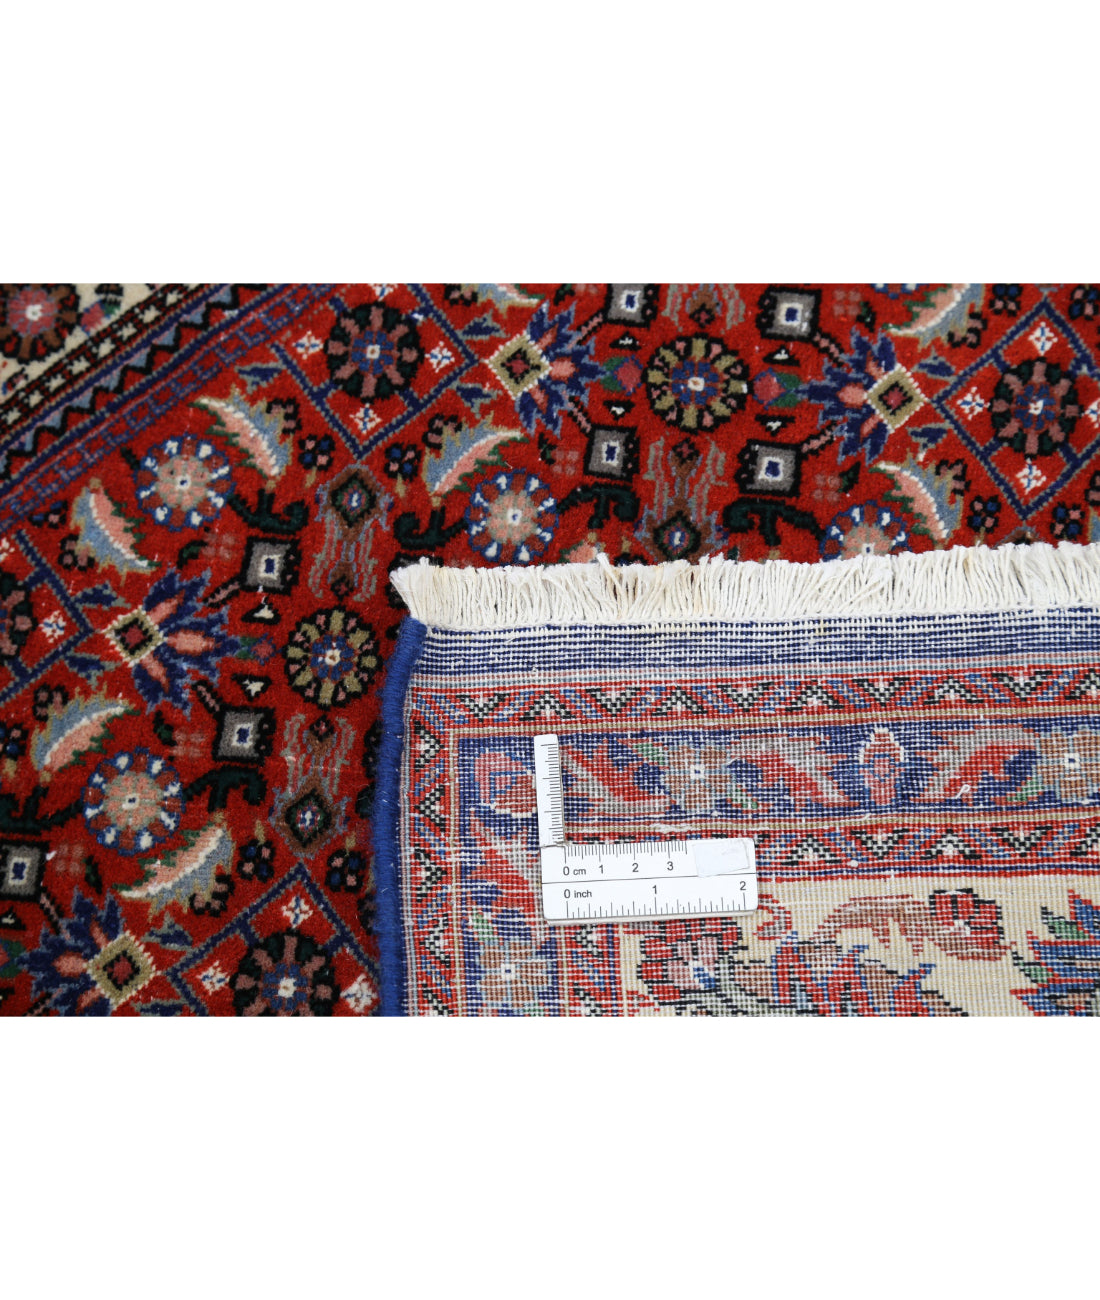 Hand Knotted Persian Bijar Wool & Silk Rug - 6'6'' x 9'9'' 6'6'' x 9'9'' (195 X 293) / Red / Ivory